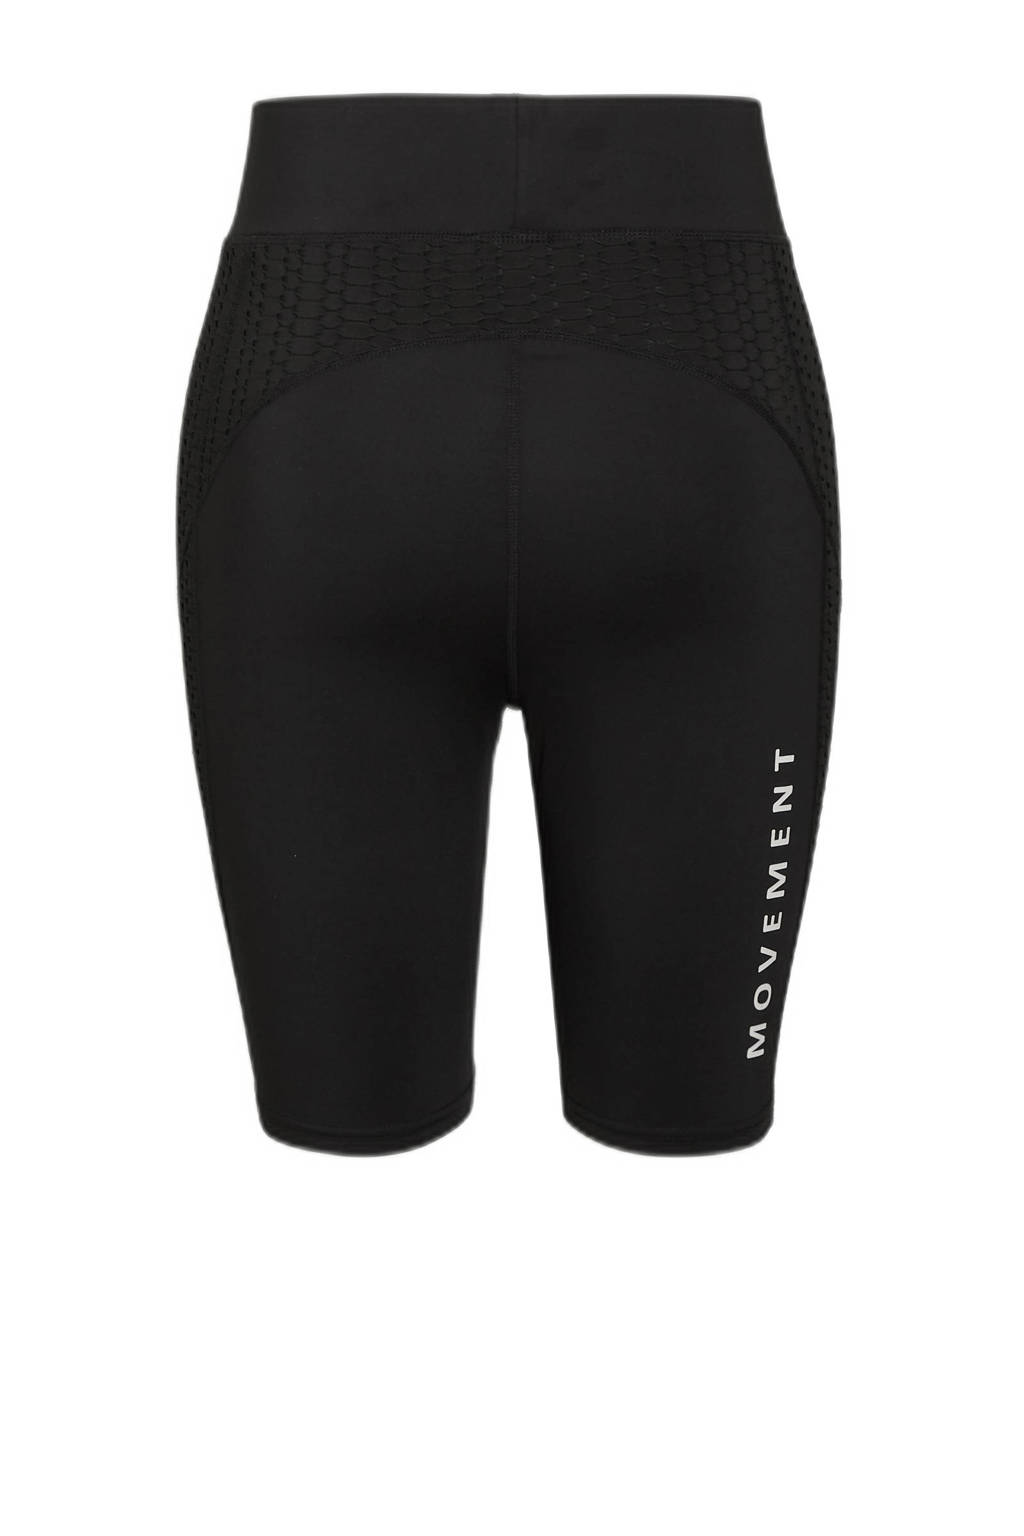 Zwarte dames ACTIVE By Zizzi sportshort Ahala van polyester met slim fit, regular waist en elastische tailleband